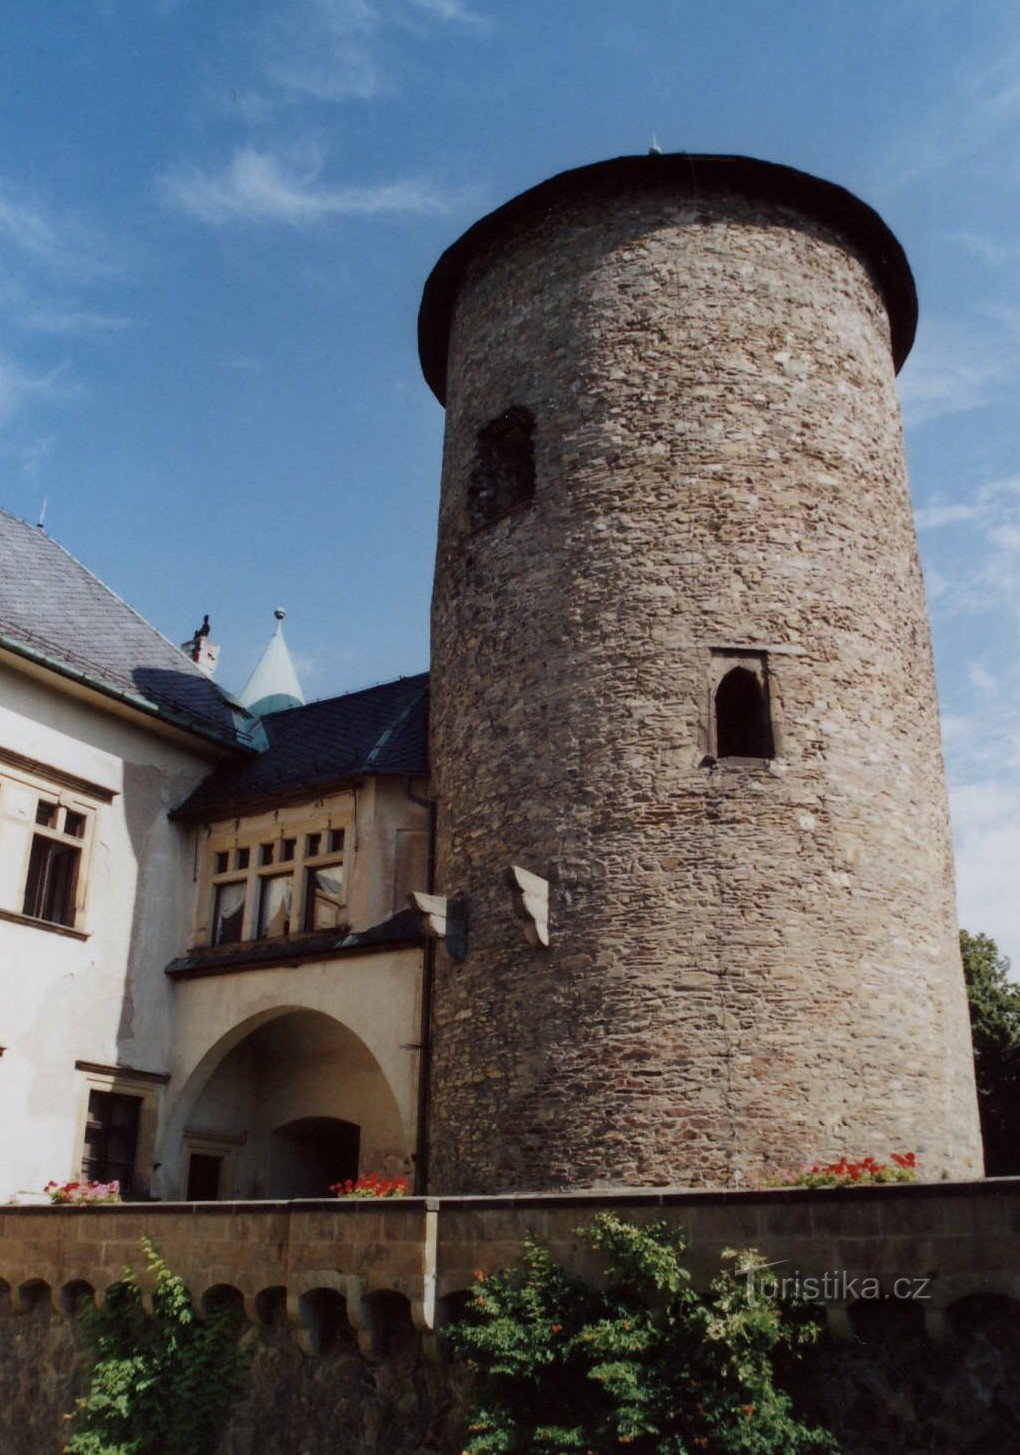 kastélyhang a 13. század közepéről.